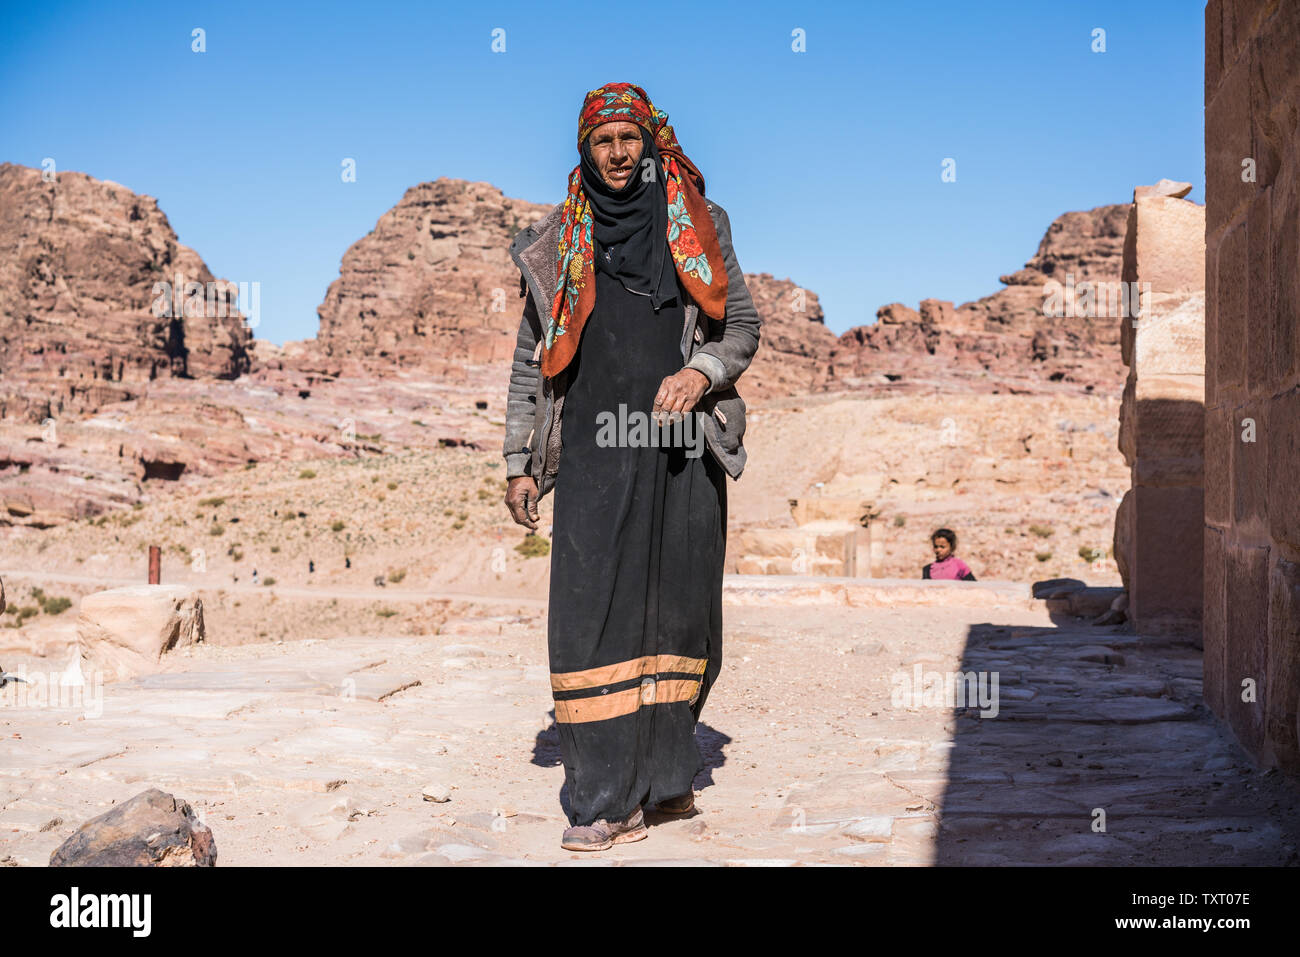 Local people in the Petra, Jordan Stock Photo - Alamy